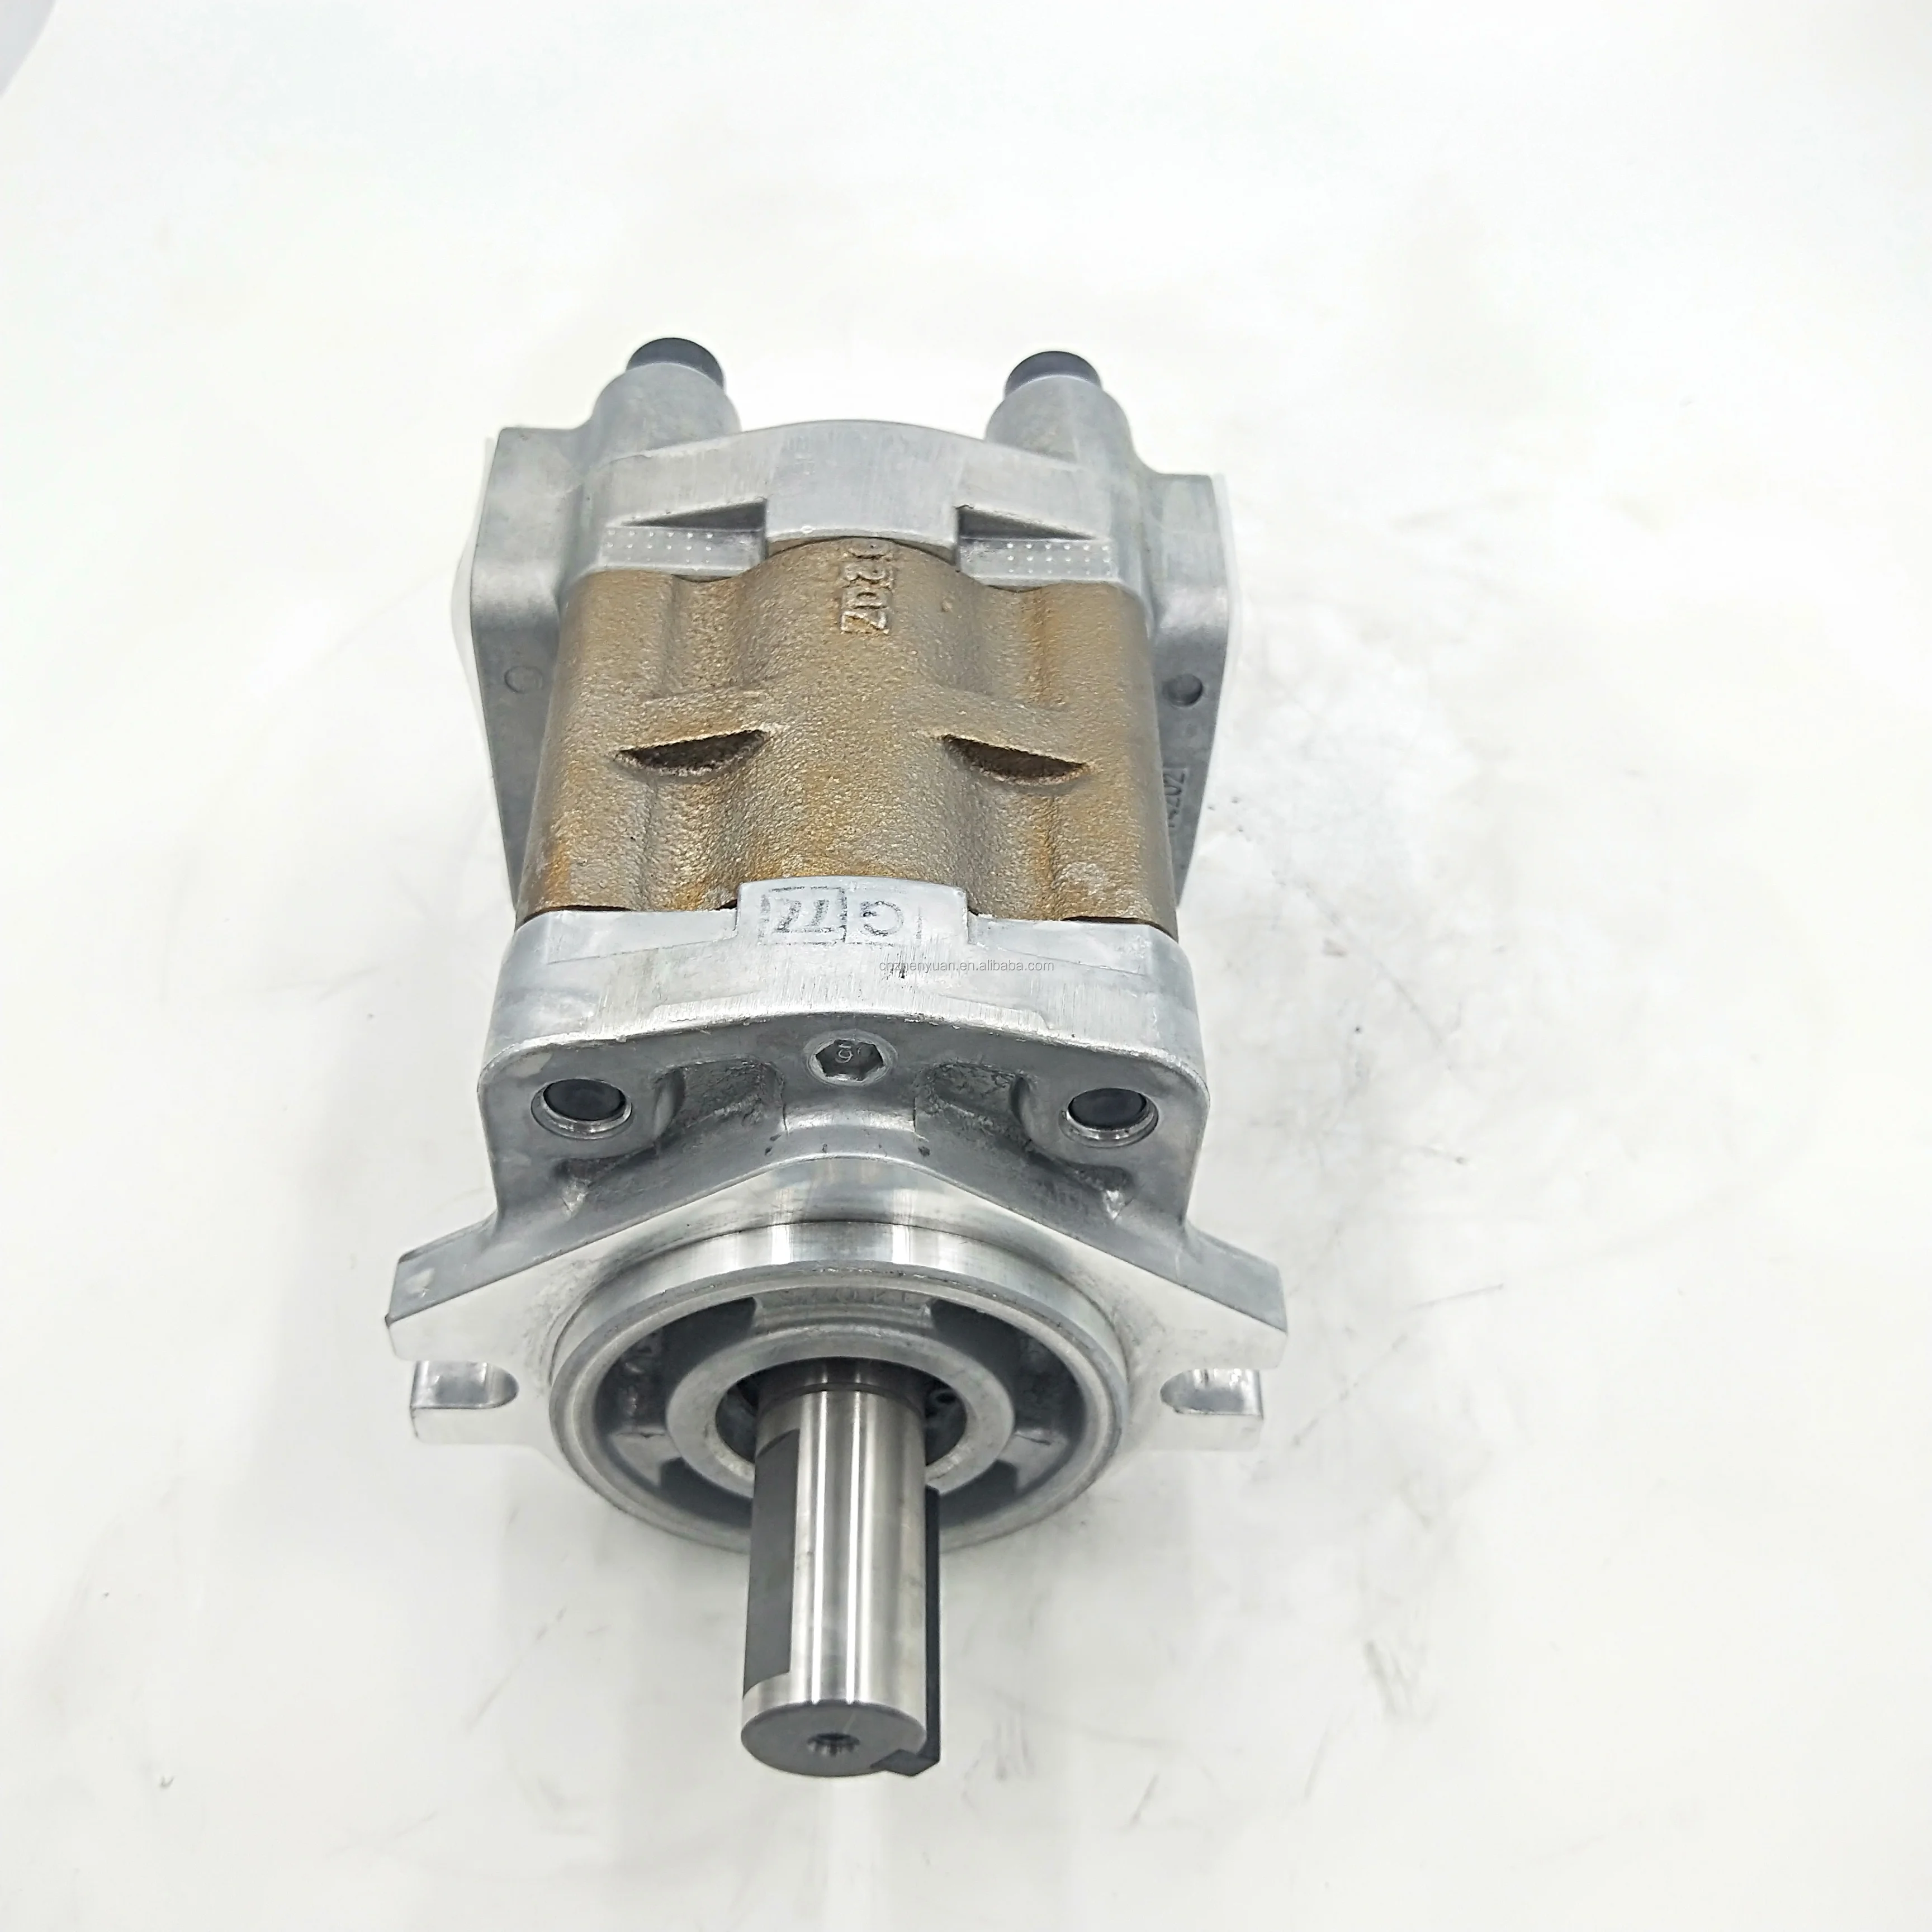 

Shimadzu High Pressure SGP SGP1 Series SGP1A30R634 Hydraulic gear pump